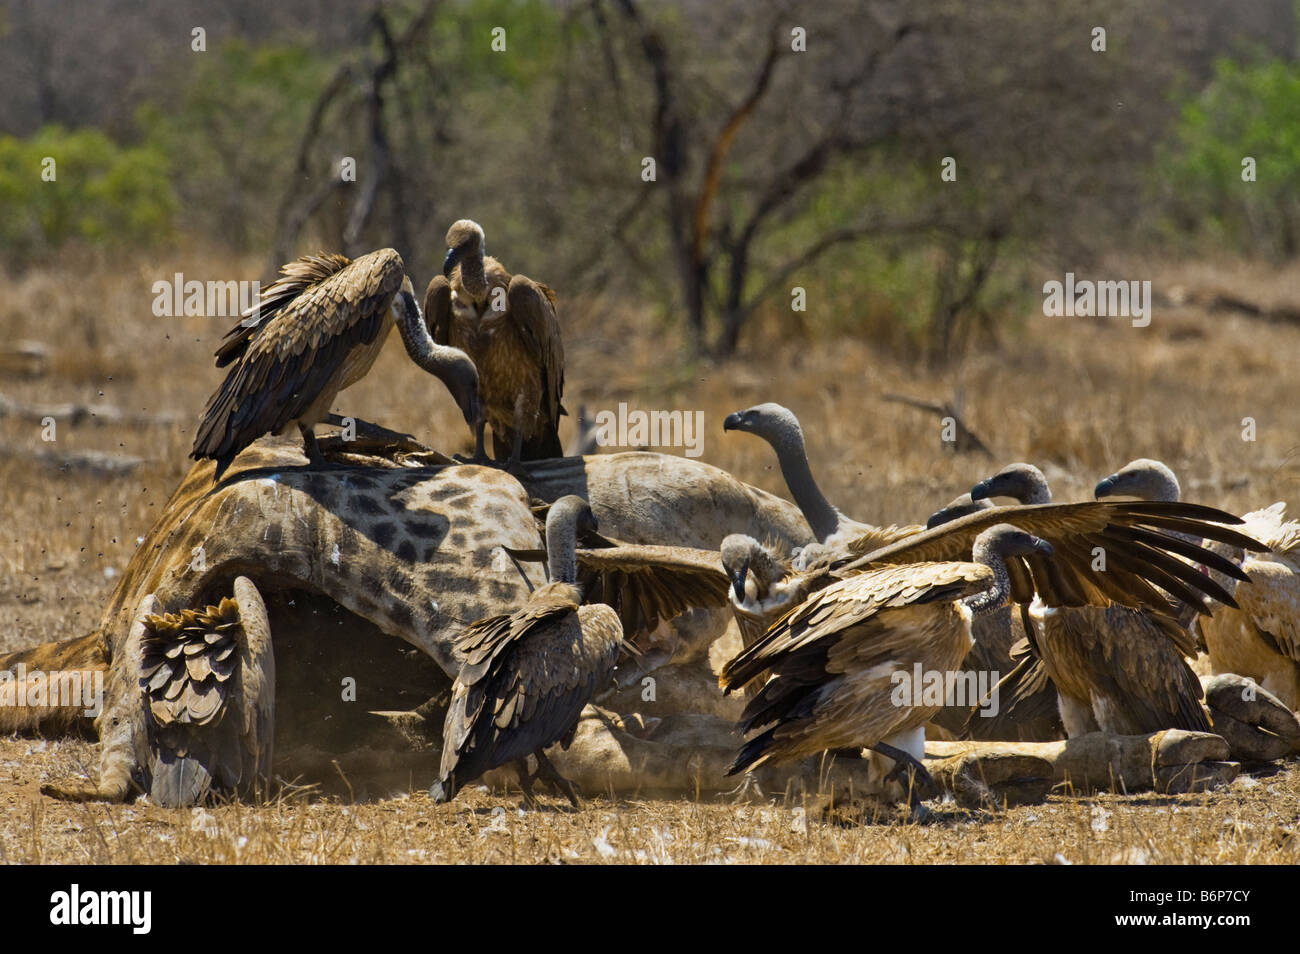 wilde Tiere füttern viel viele Geier Vulture AAS Essen, Süd-Afrika Südafrika Essen Fütterung Scavenger-giraffe Stockfoto